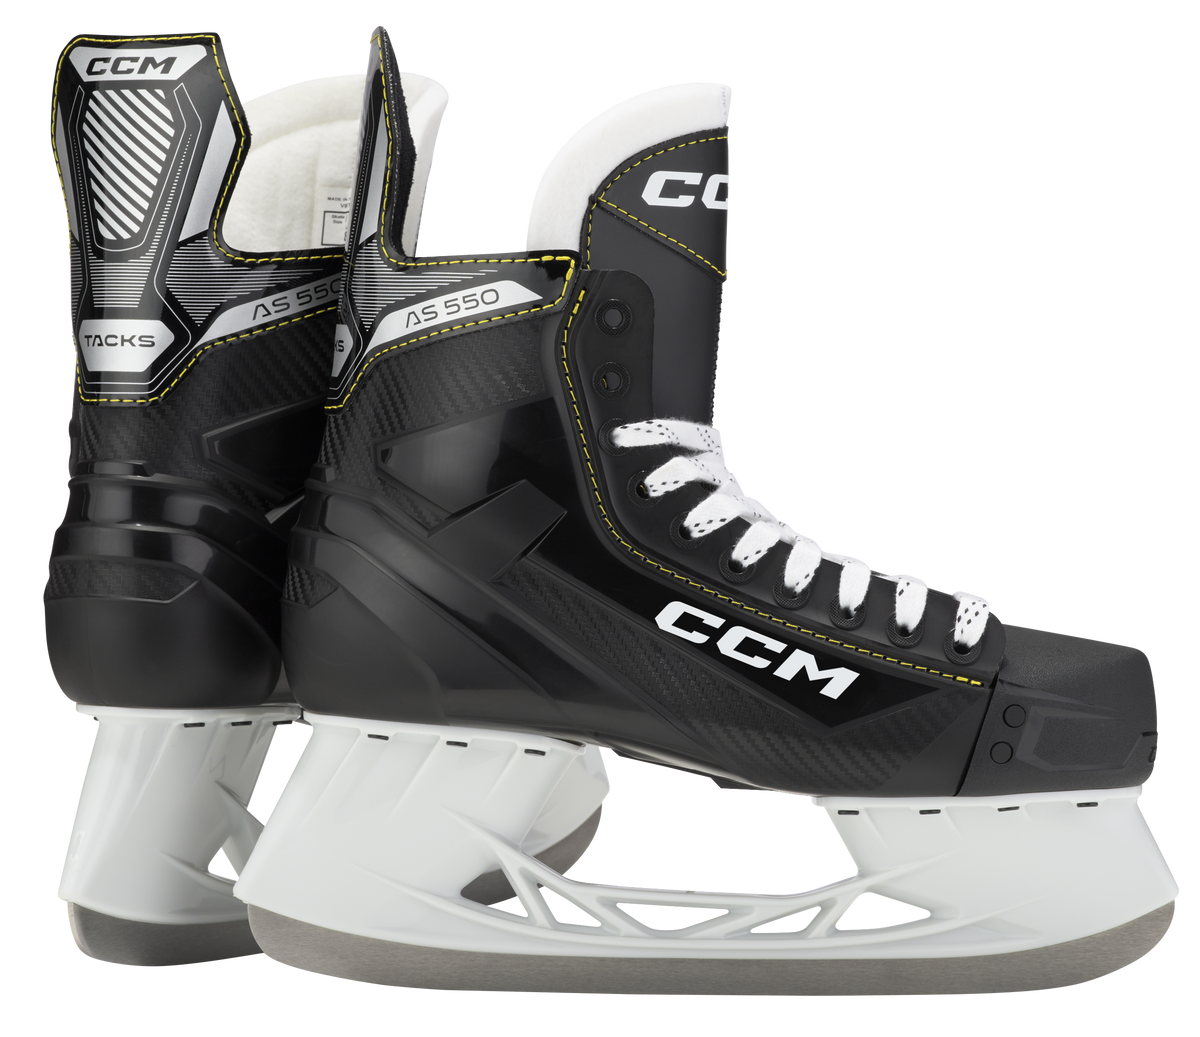 CCM Tacks AS-550 patins de hockey junior